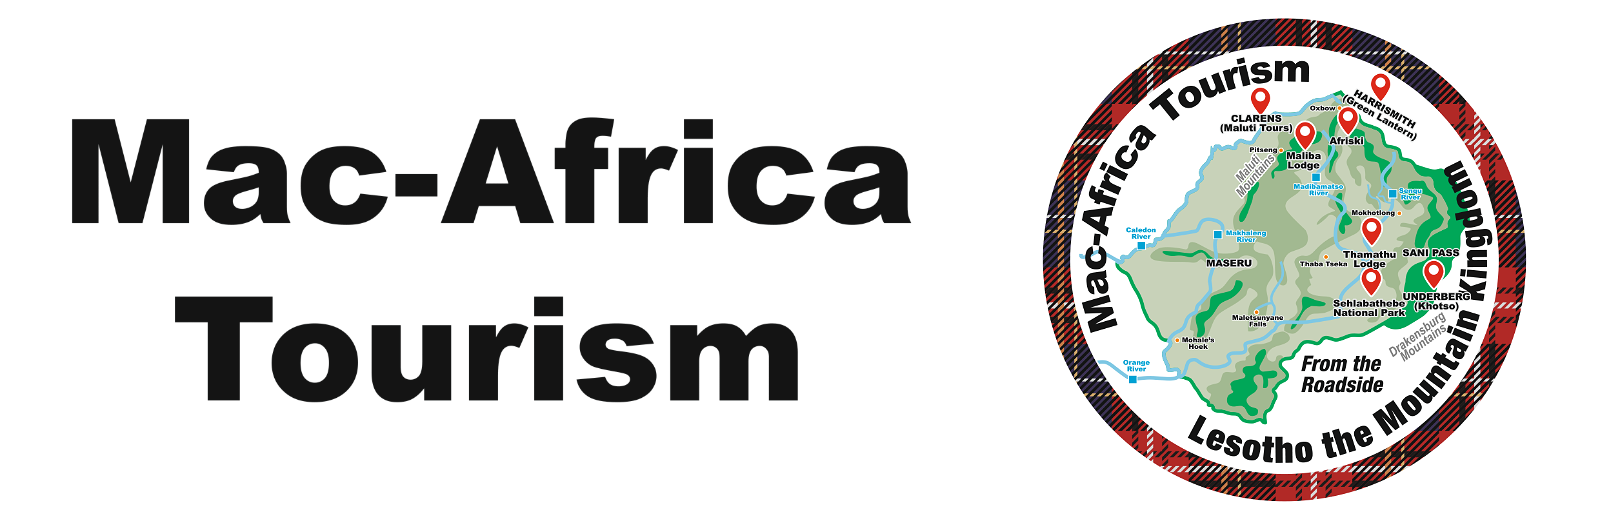 Mac-Africa Tourism - Local & Unique Destinations